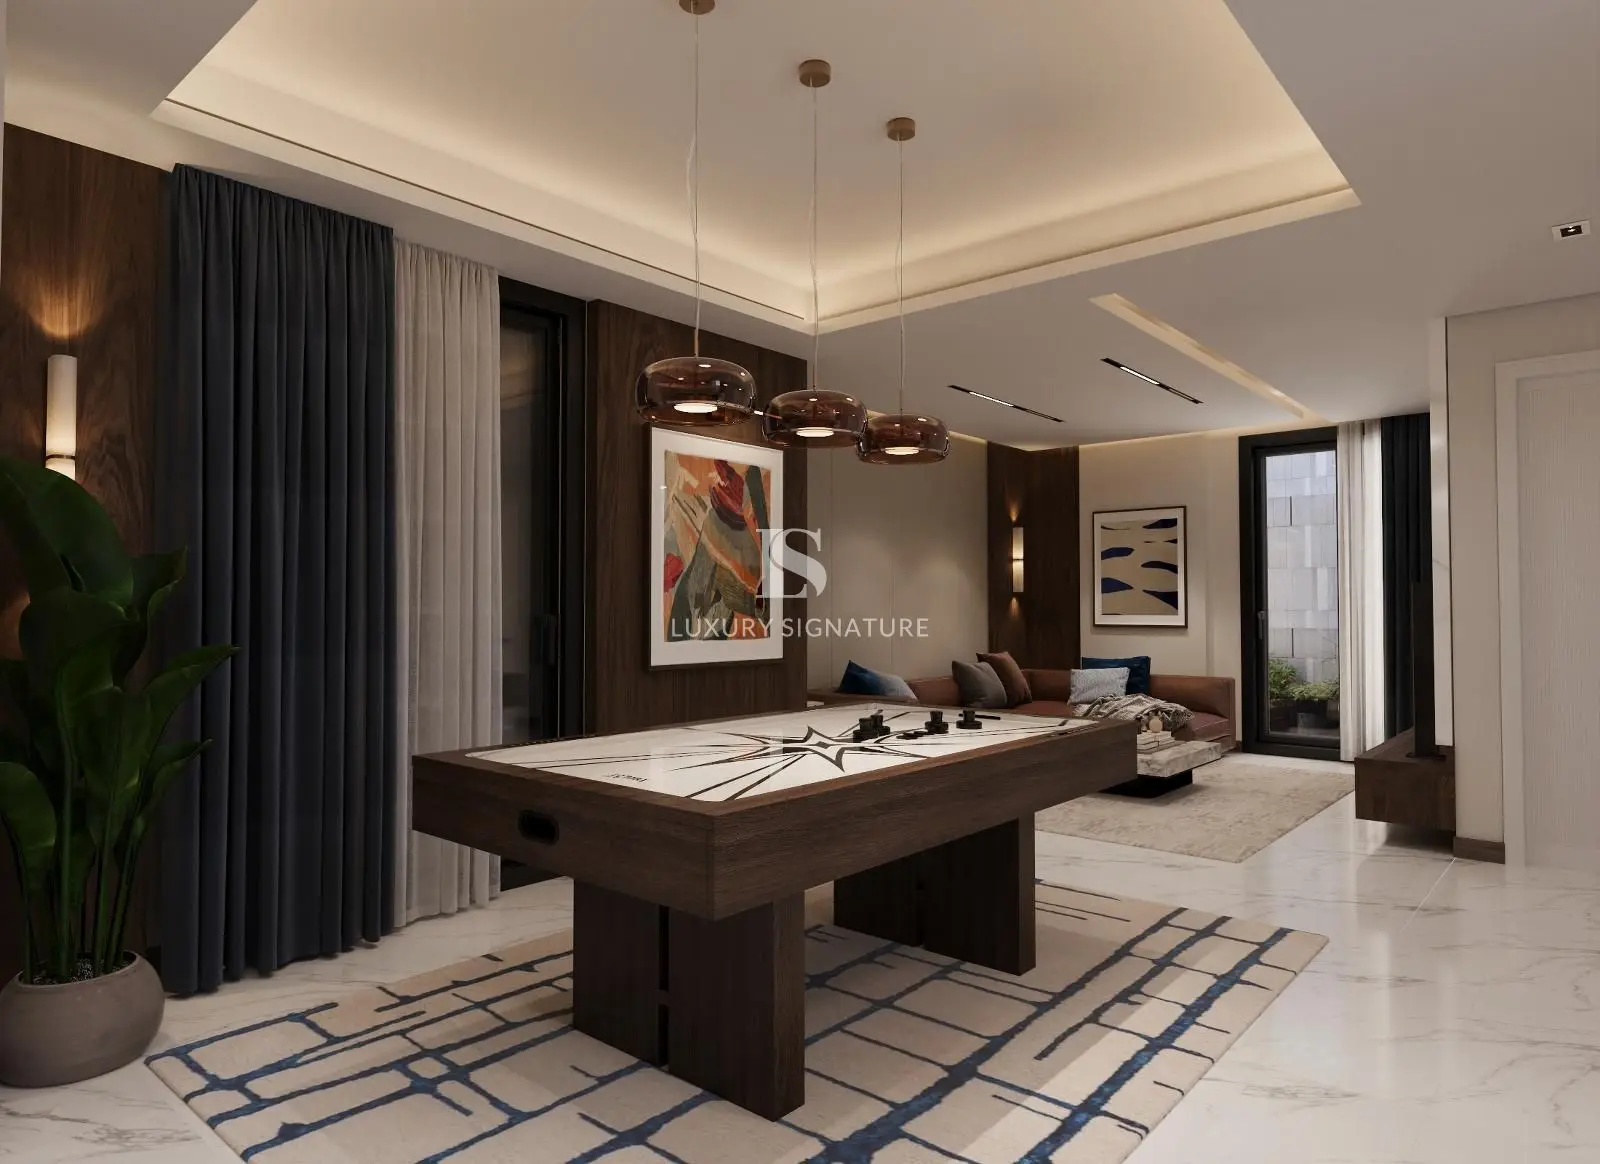 Luxury Signature interior Design Pic